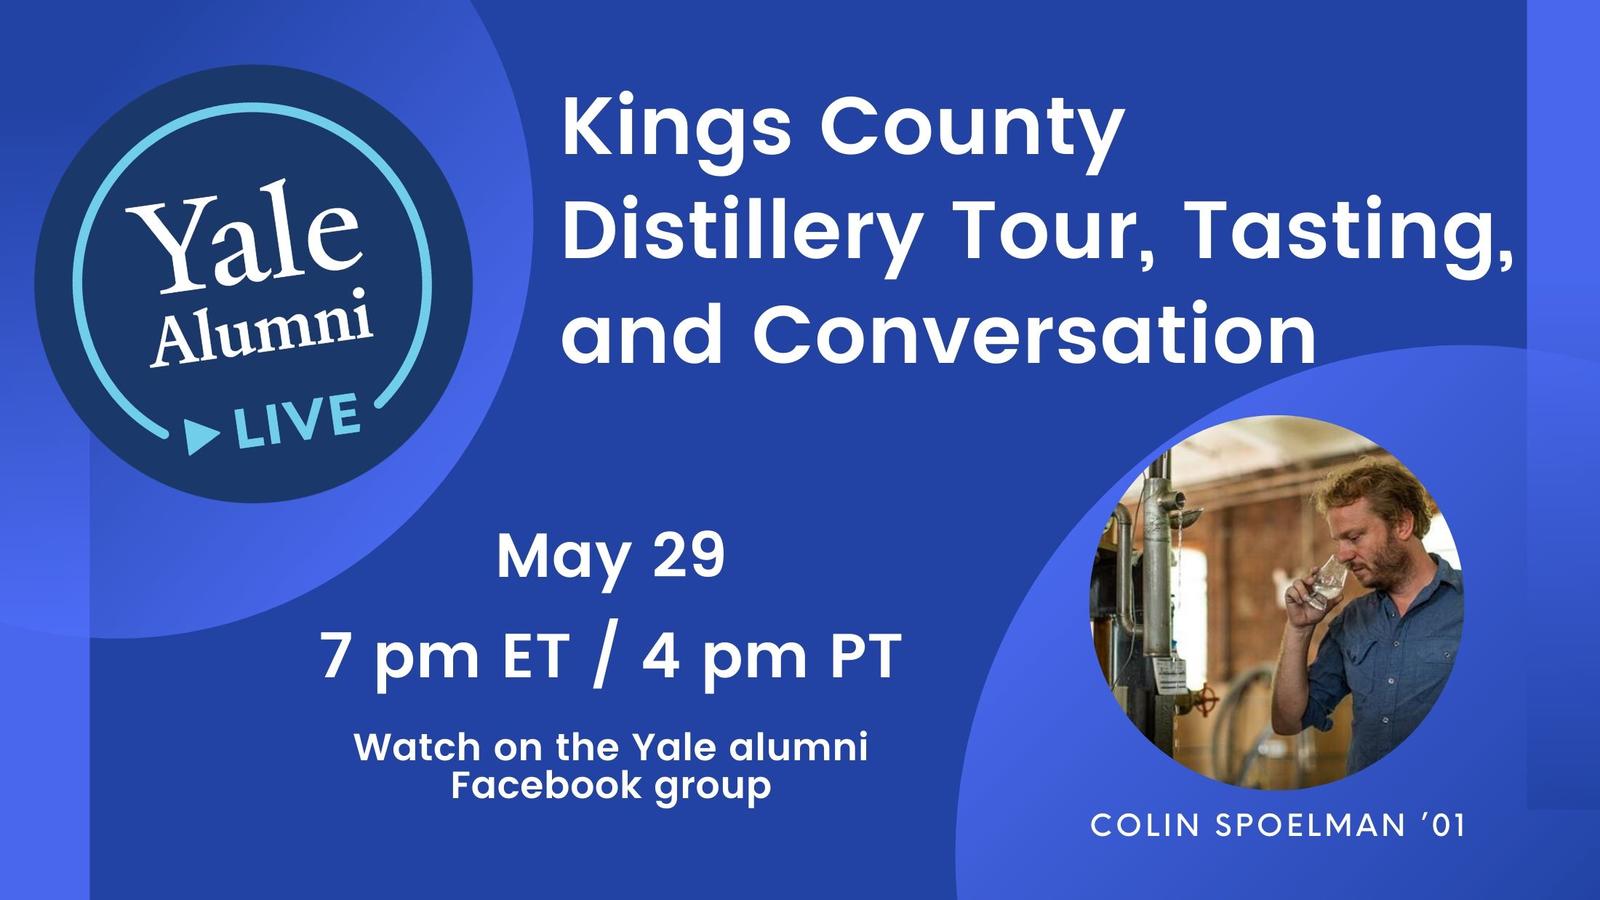 Yale Alumni Live - Kings County Distillery